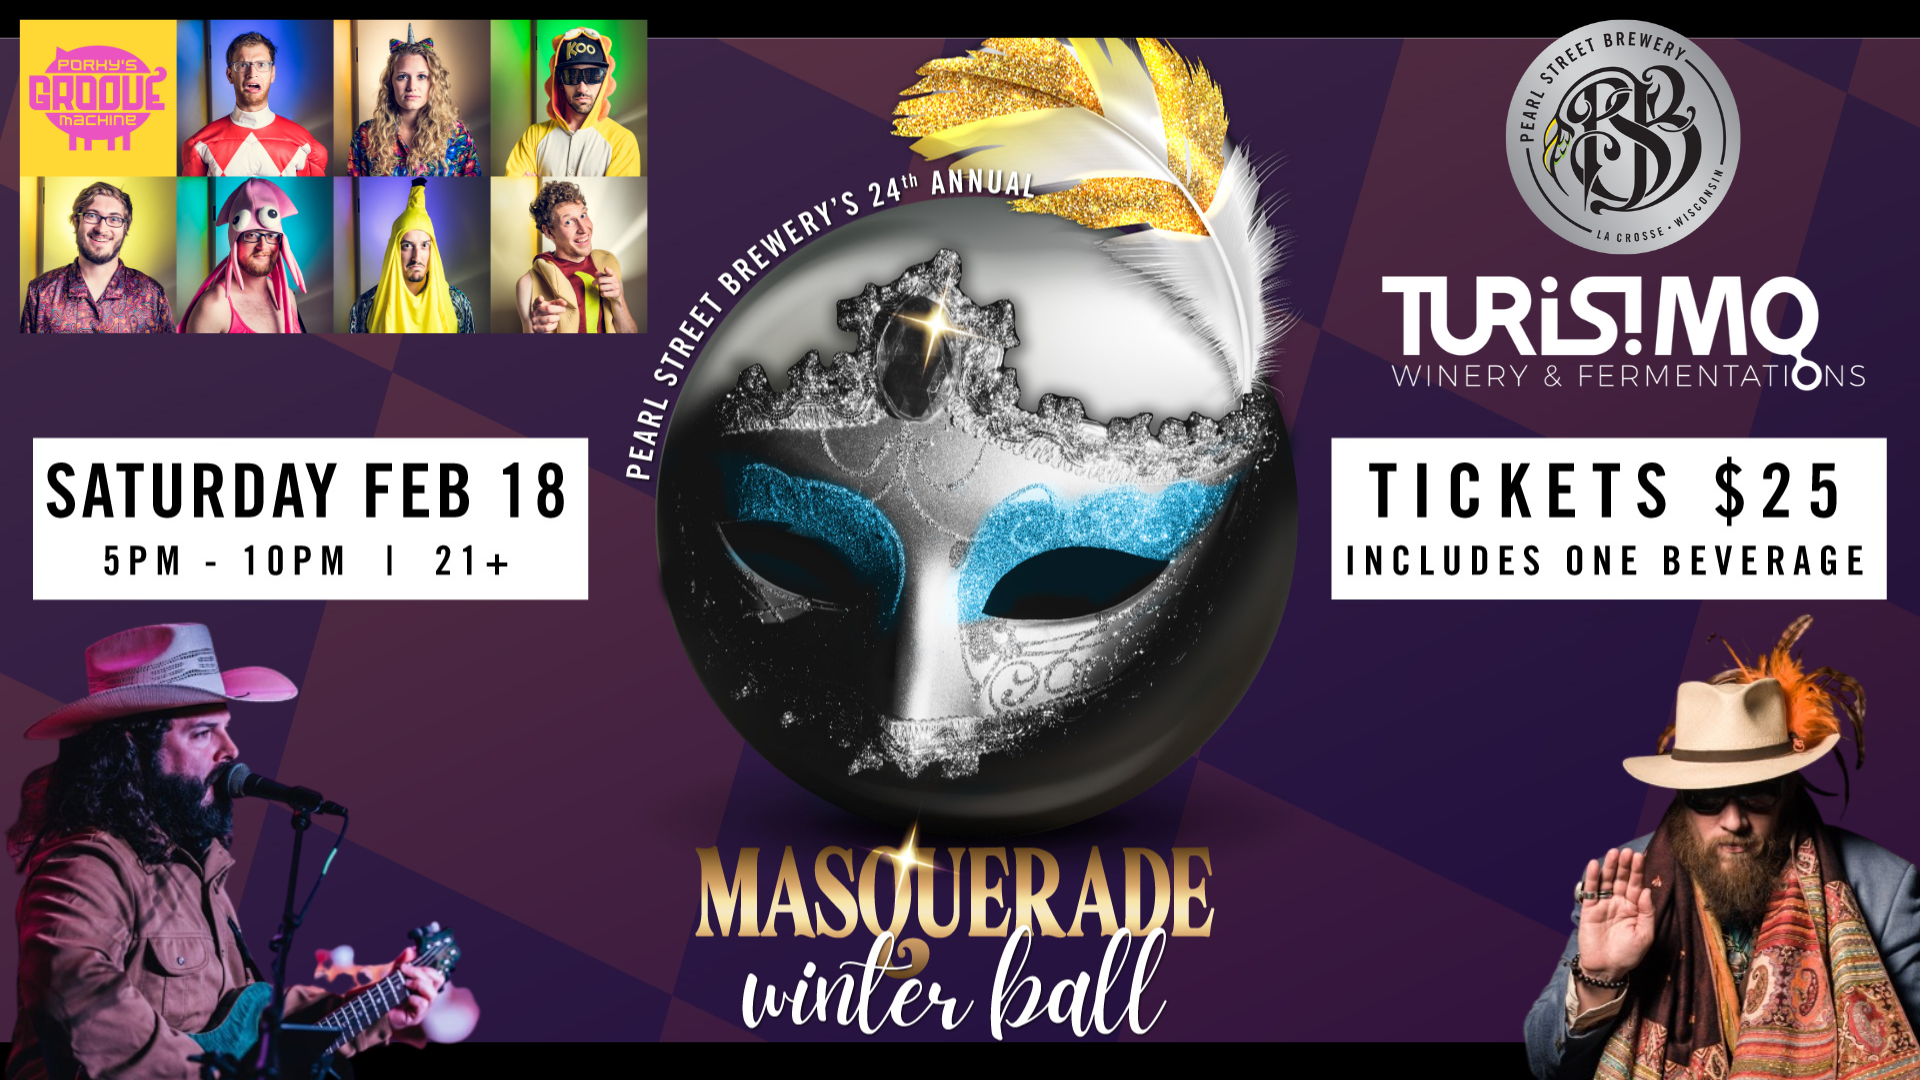 24th Annual “Masquerade” Winter Ball